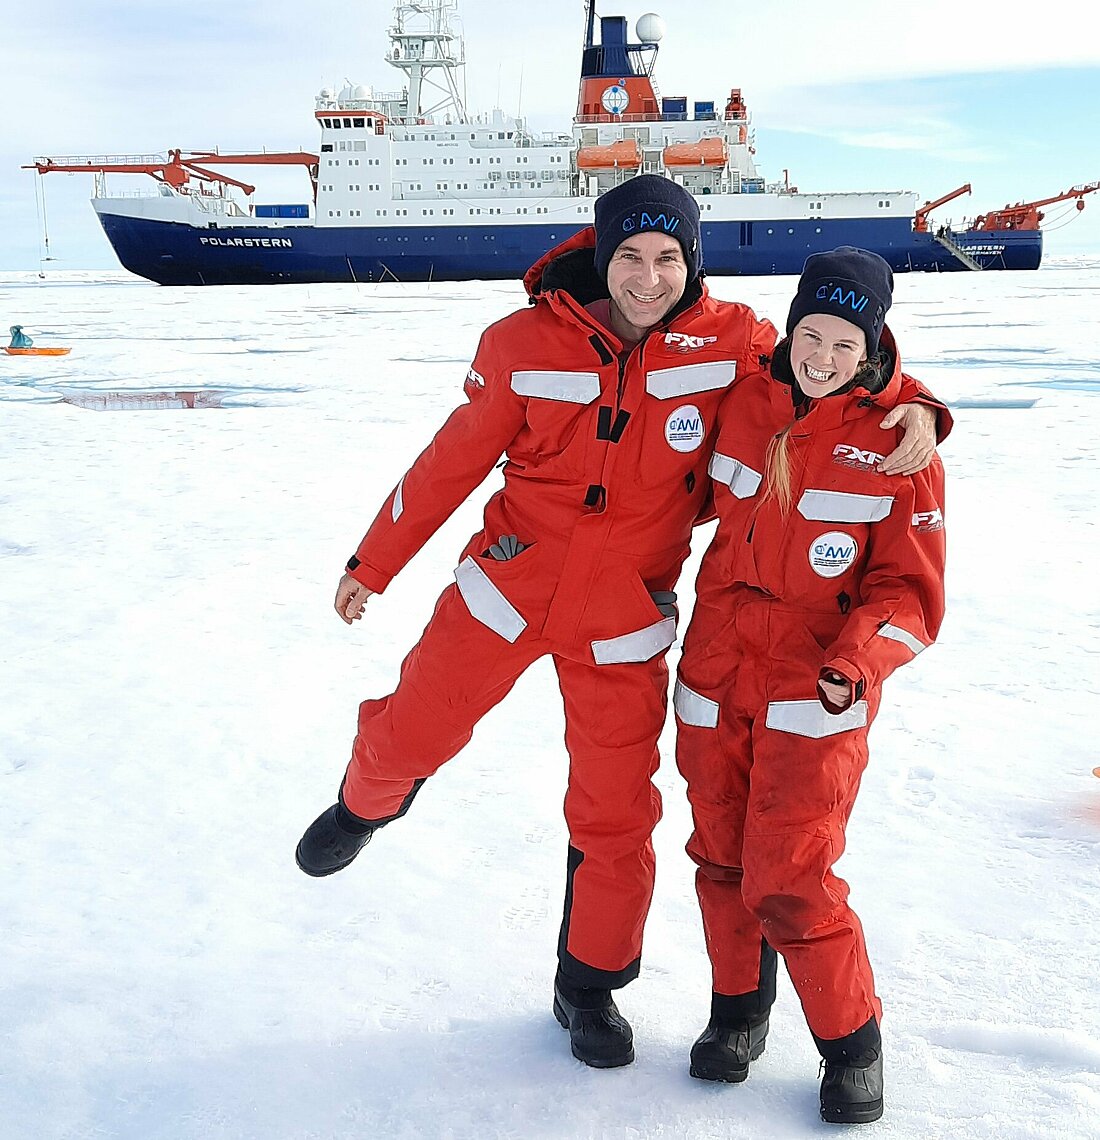 Zu sehen sind zwei Menschen in Schneeanzügen in der Arktis